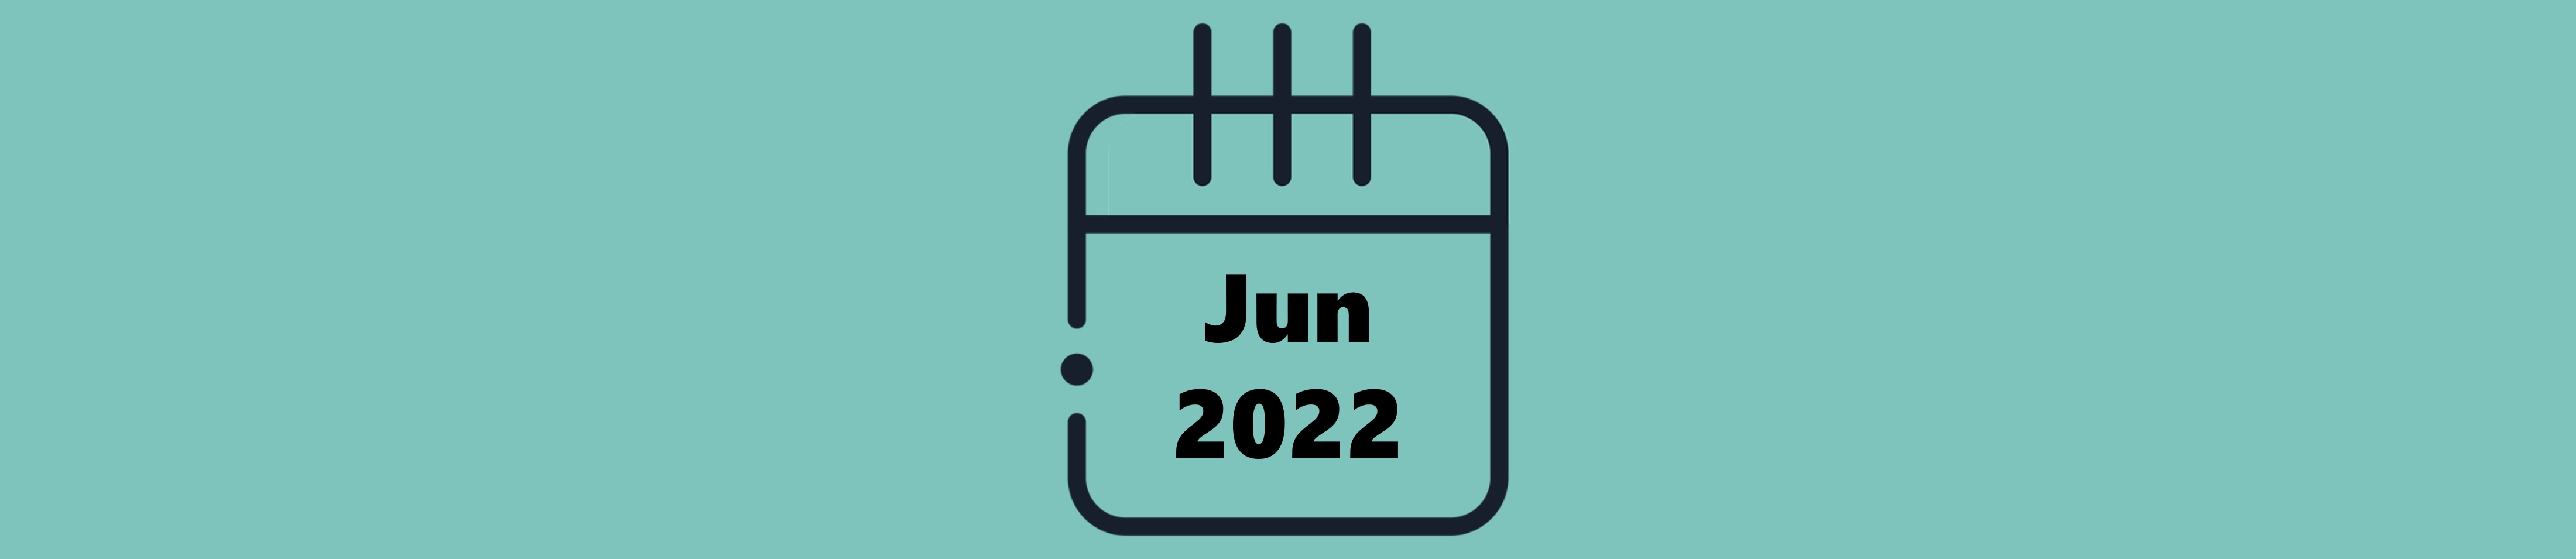 Indicações do Mês de Junho (2022)